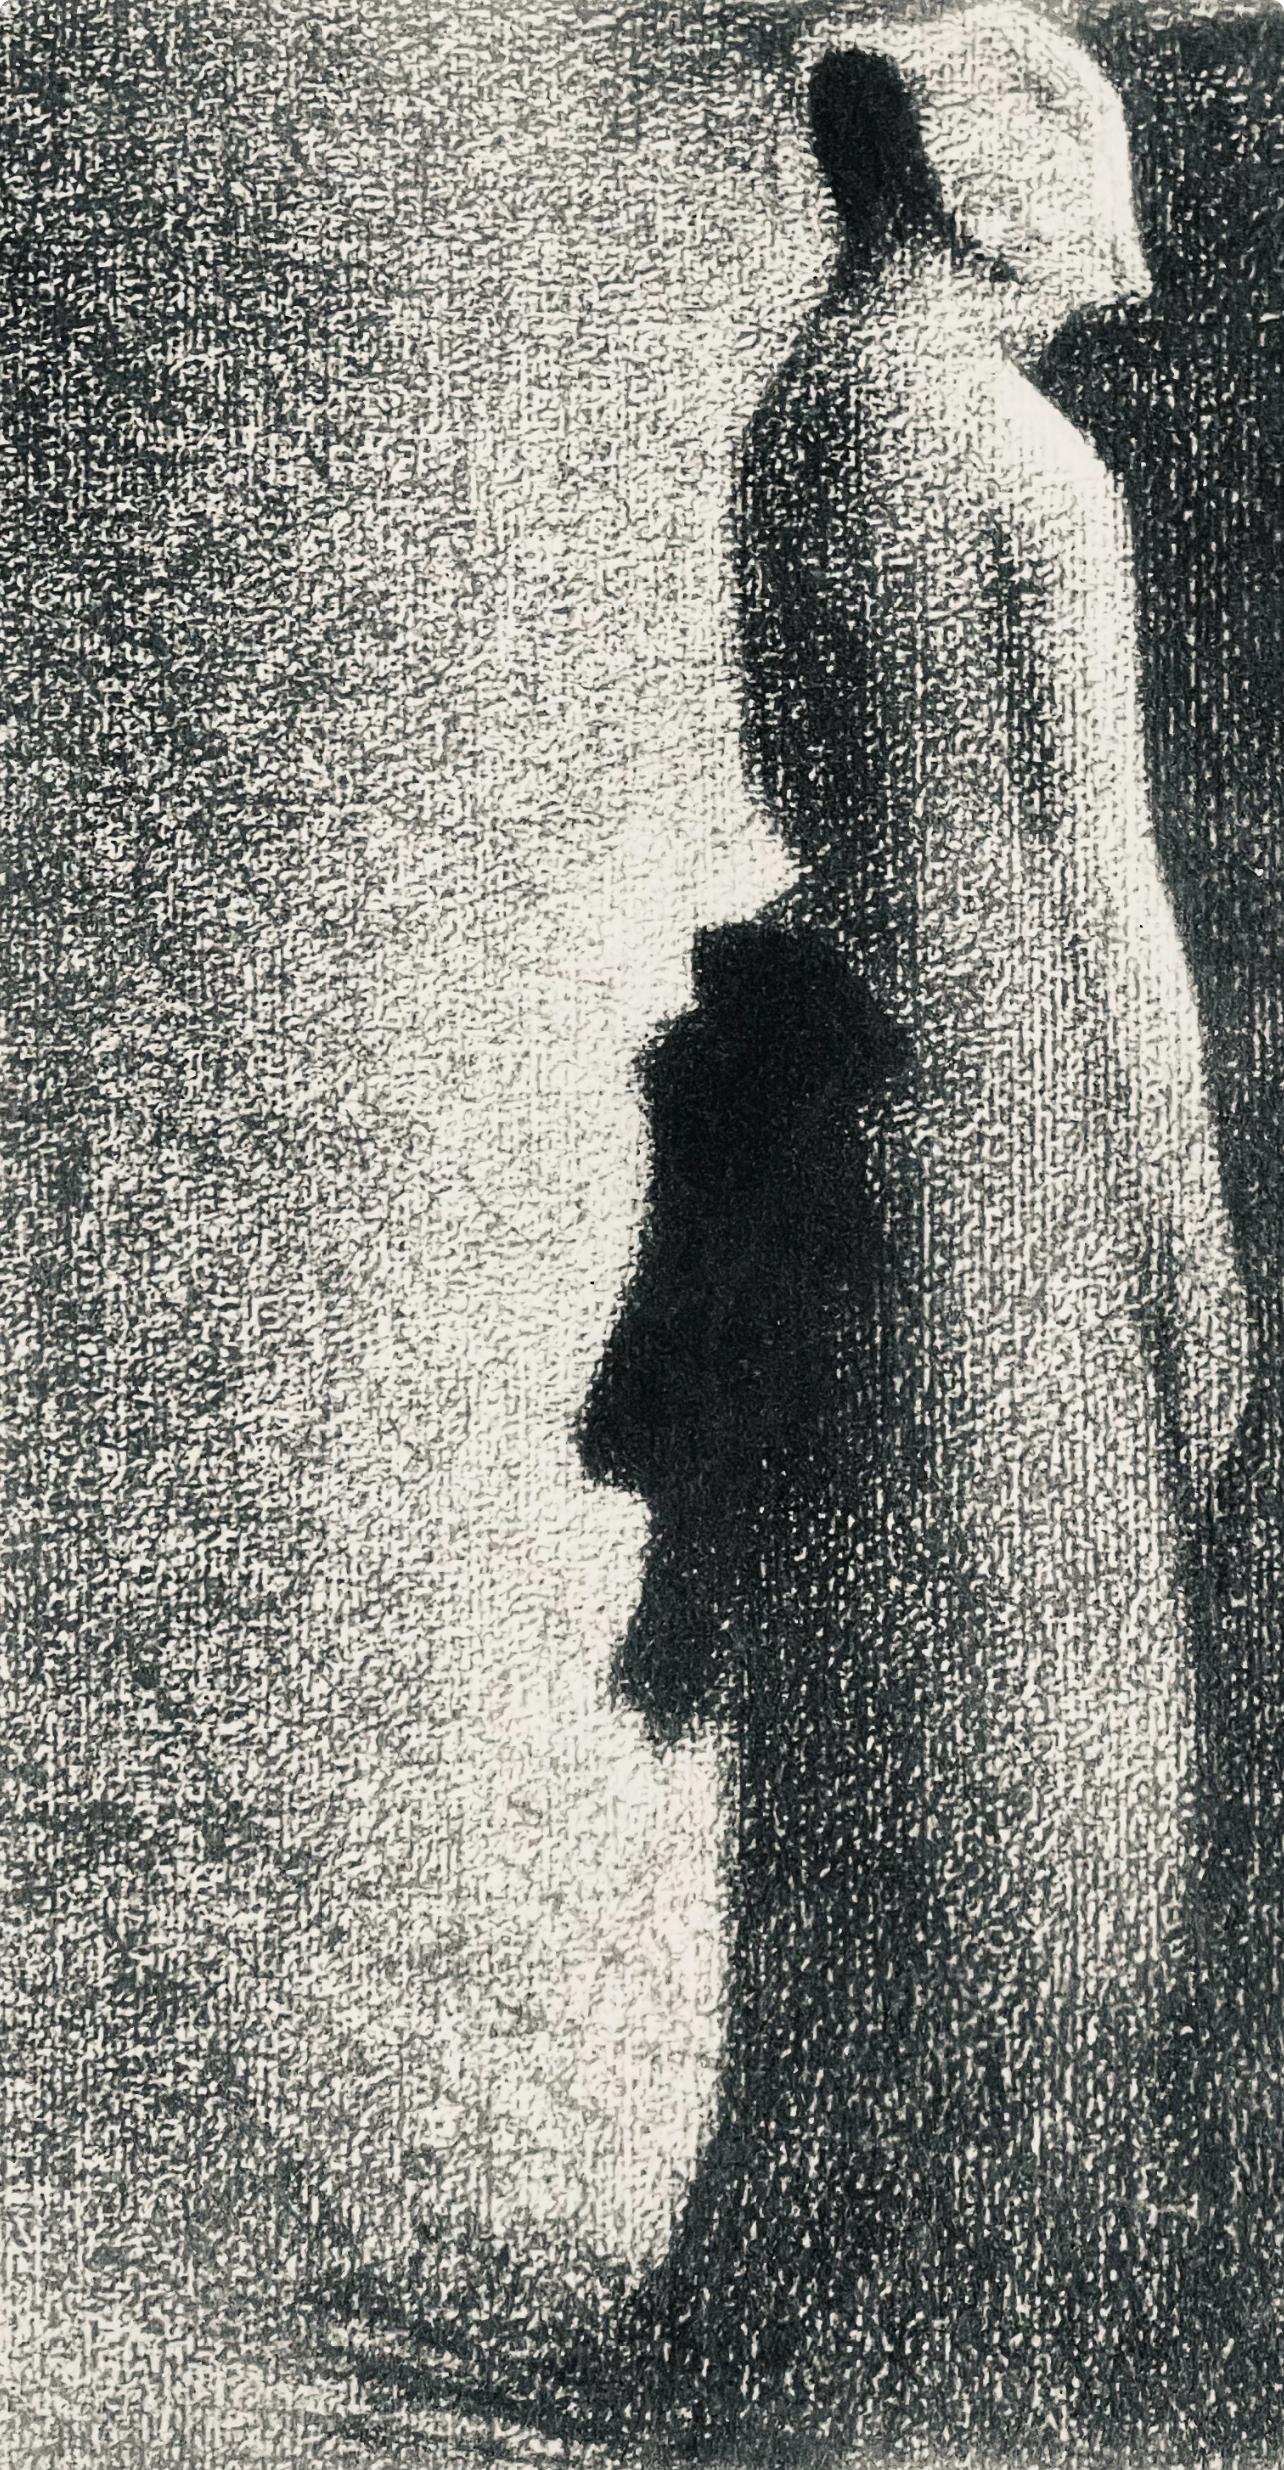 Seurat, Le nœud noir, Seurat (after) - Print by Georges Seurat